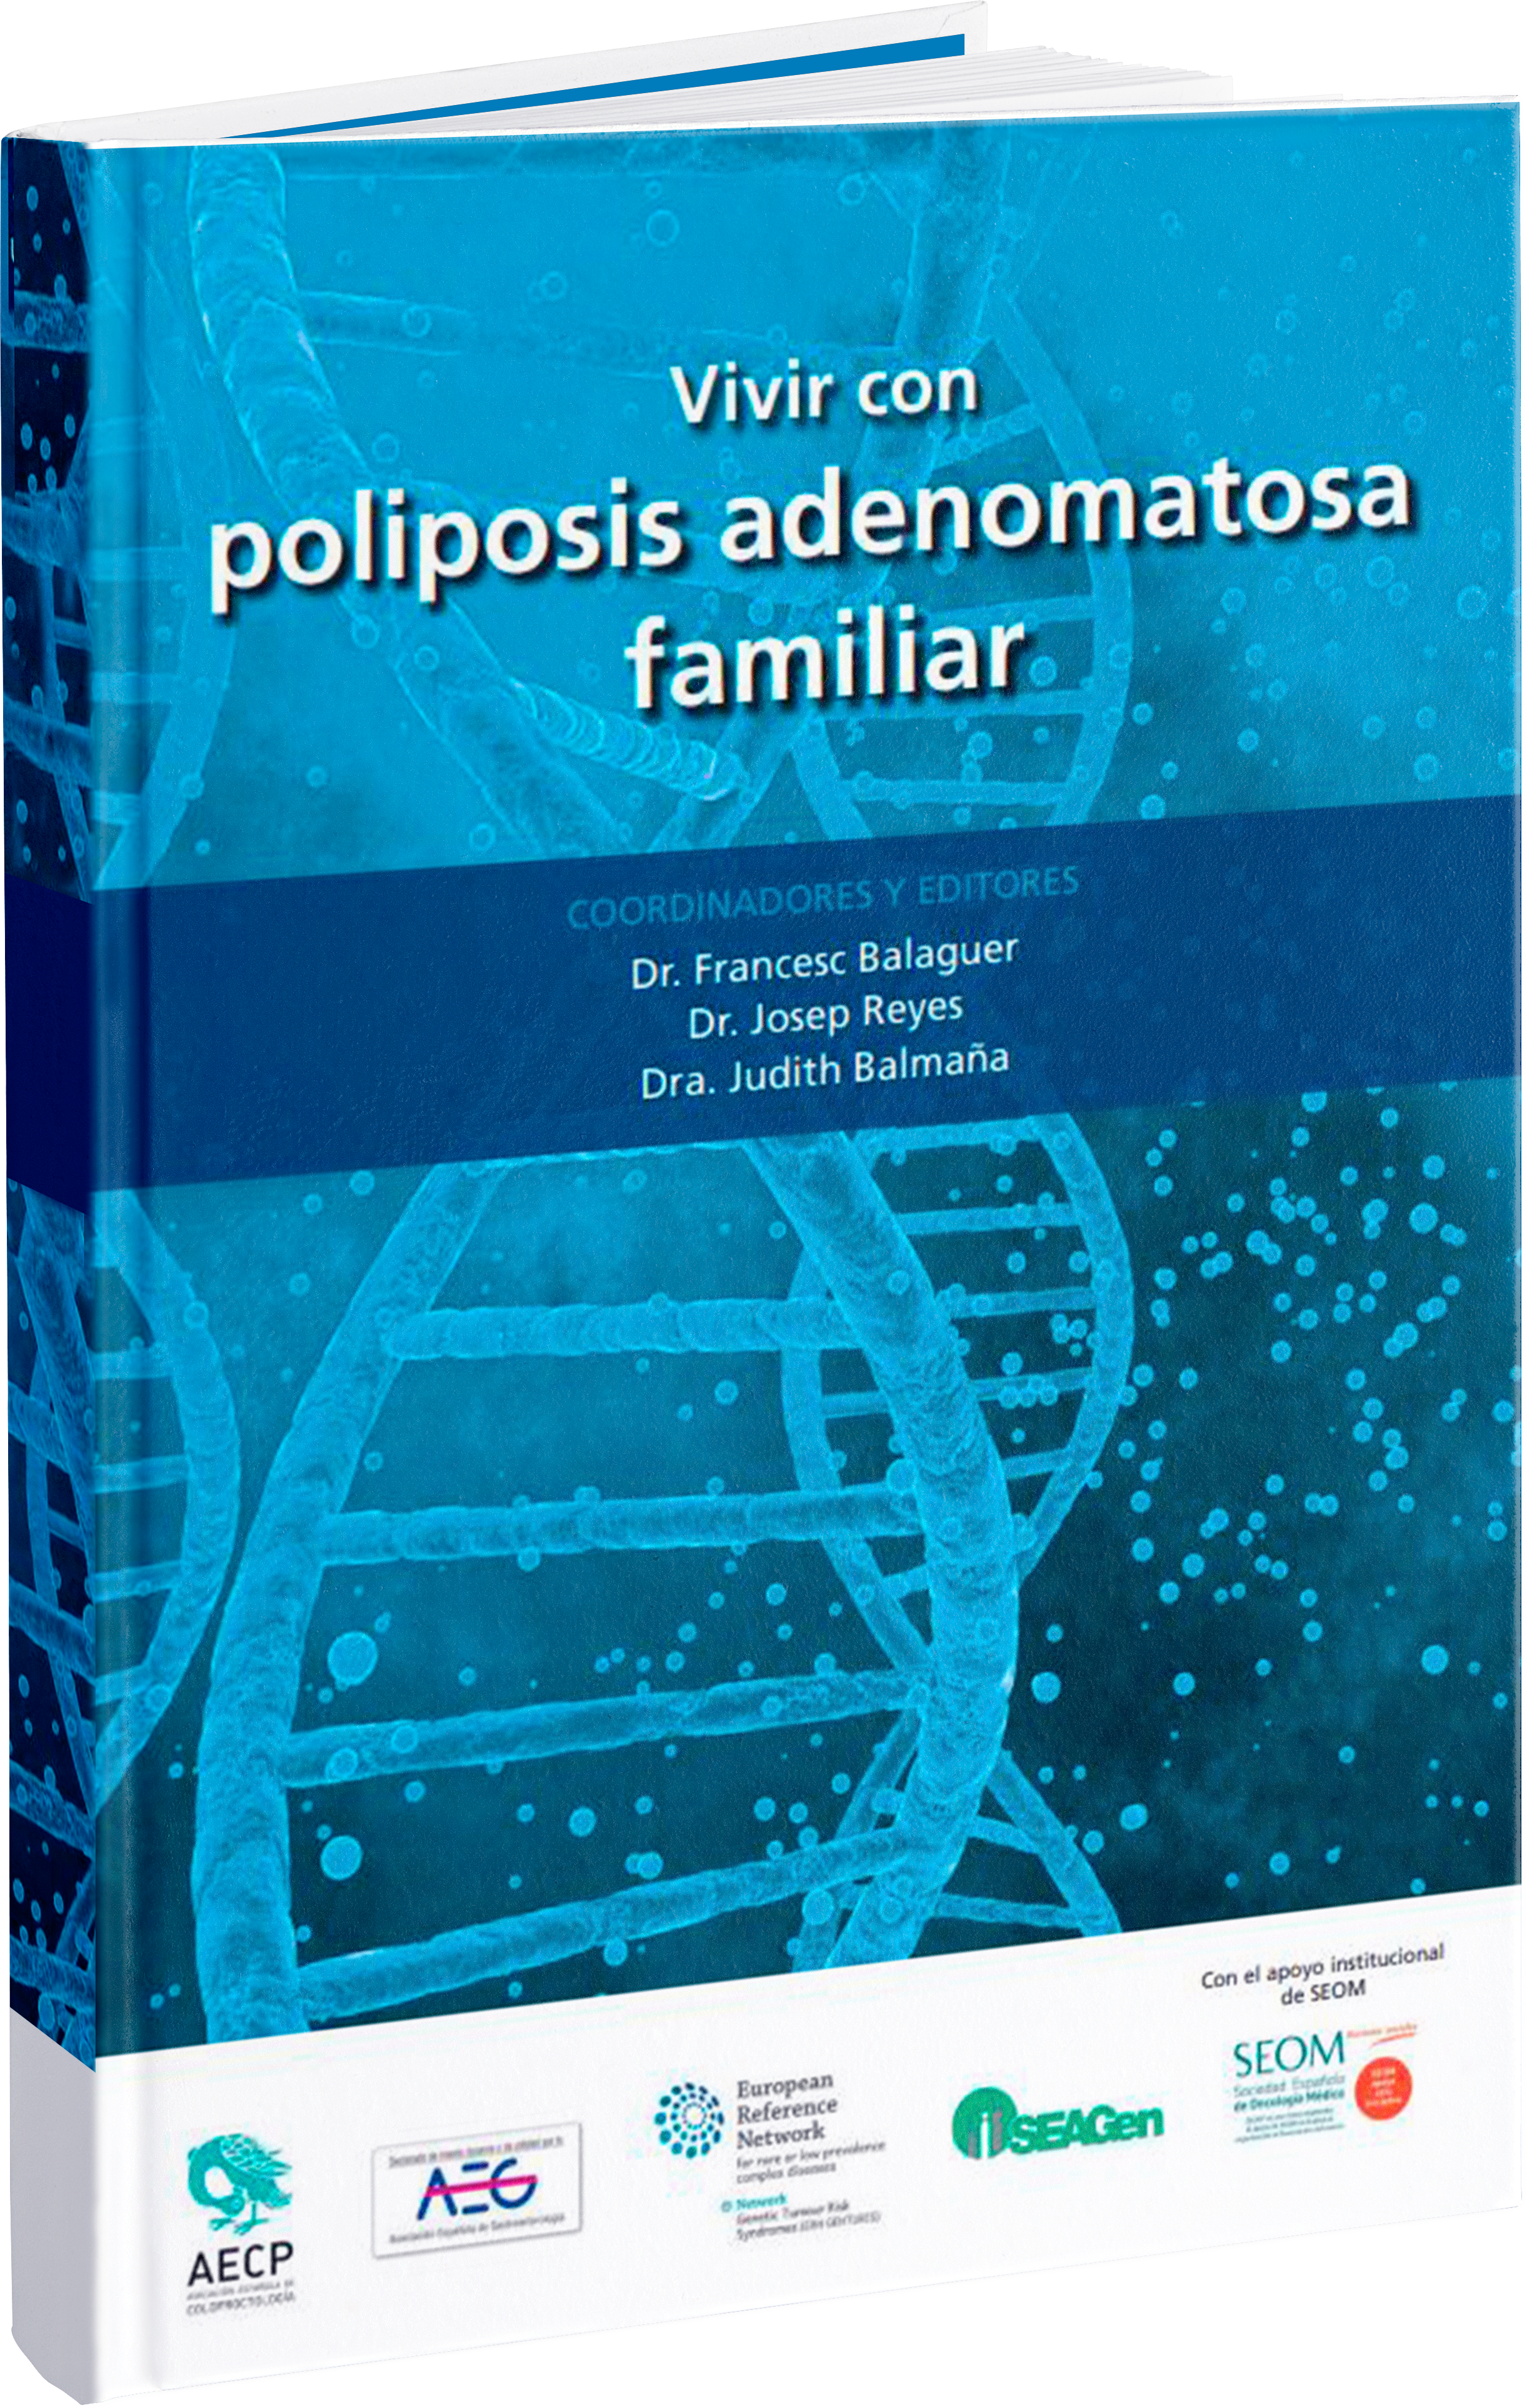 Poliposis adenomatosa familiar